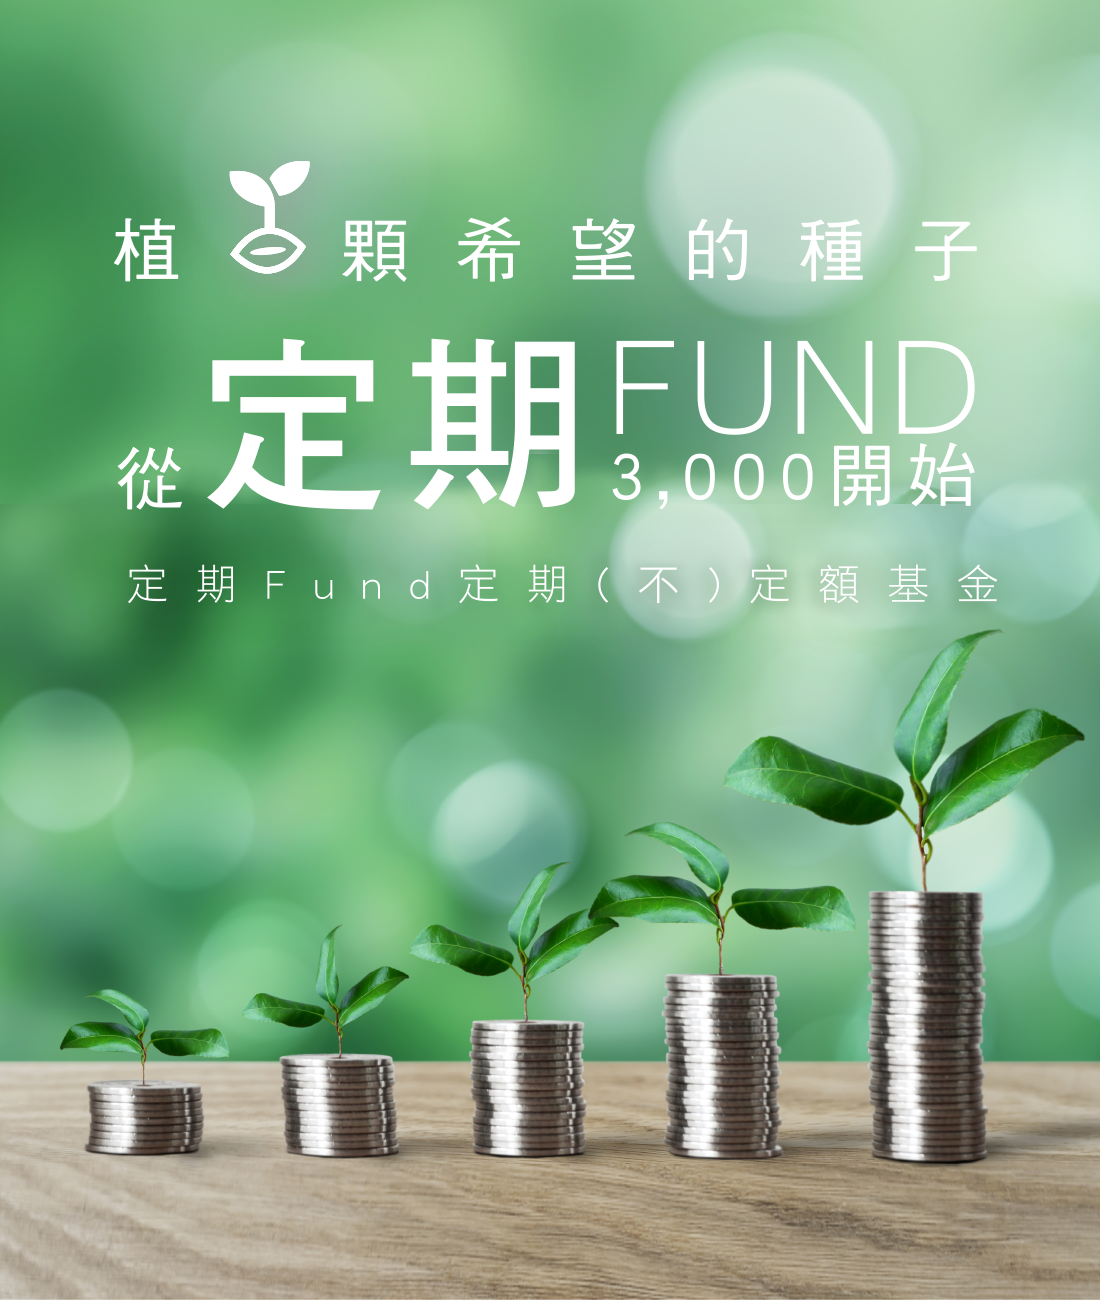 安泰銀行「網際行動大Fund送（定期Fund）」定期(不)定額基金專案